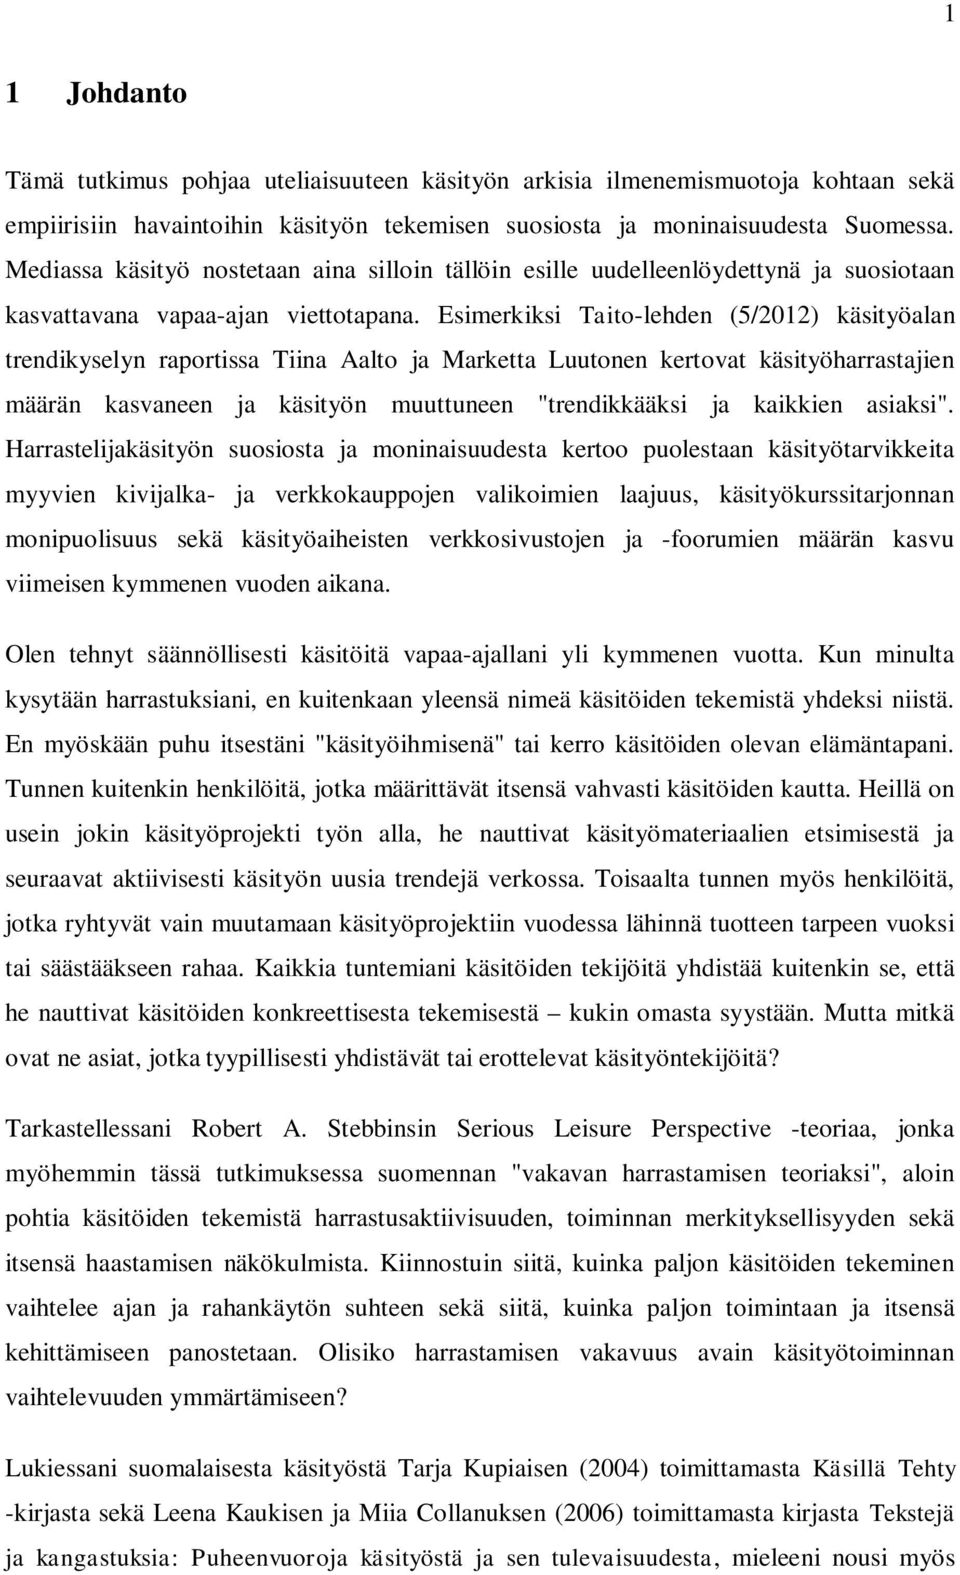 Esimerkiksi Taito-lehden (5/2012) käsityöalan trendikyselyn raportissa Tiina Aalto ja Marketta Luutonen kertovat käsityöharrastajien määrän kasvaneen ja käsityön muuttuneen "trendikkääksi ja kaikkien